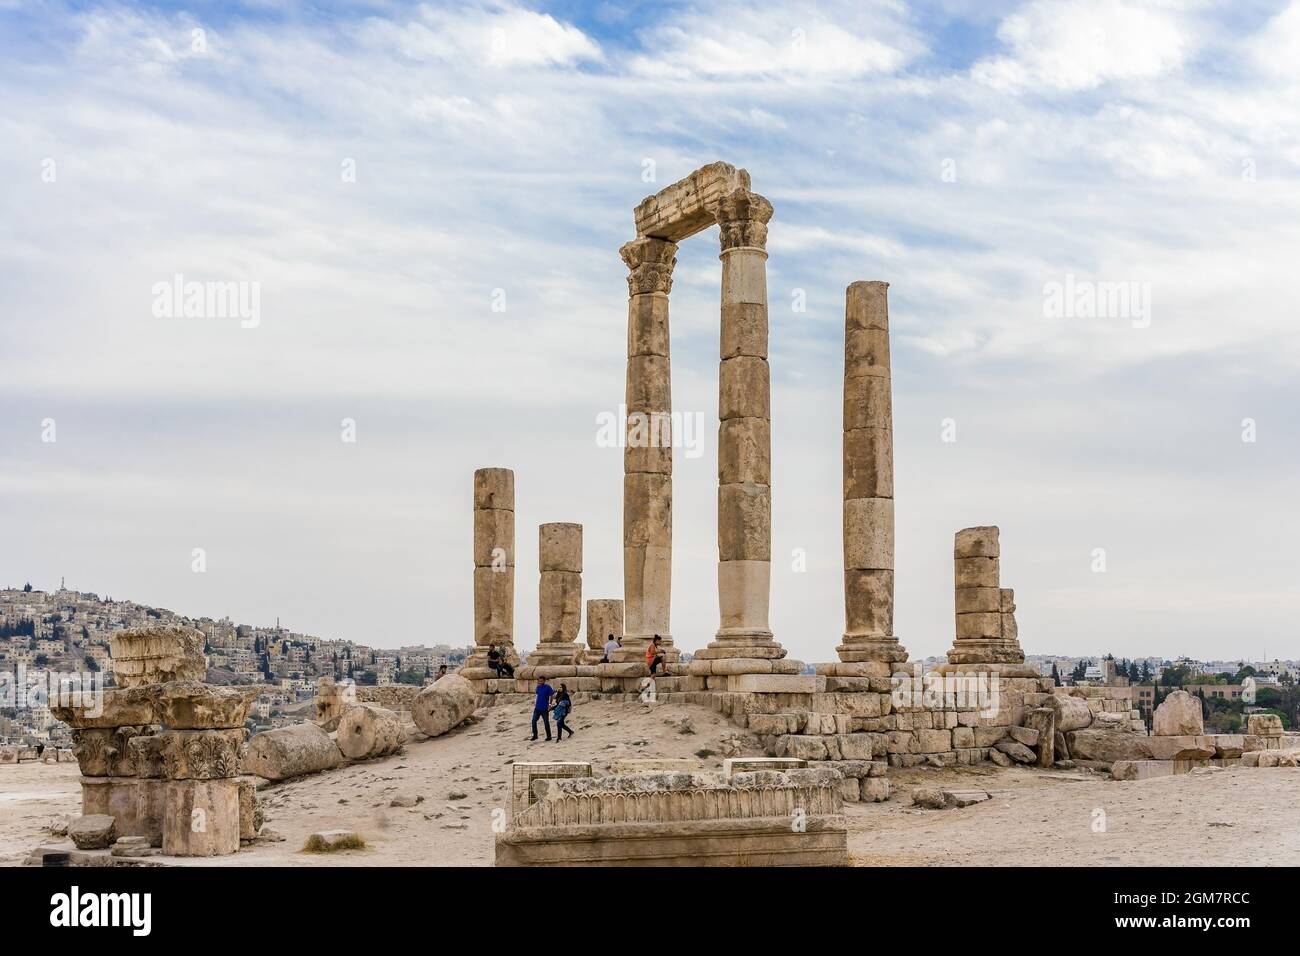 AMMAN, JORDANIE - 15 OCTOBRE 2018 : Temple d'Hercules, colonnes Corinthiennes romaines à Citadel Hill, Amman, Jordanie Banque D'Images